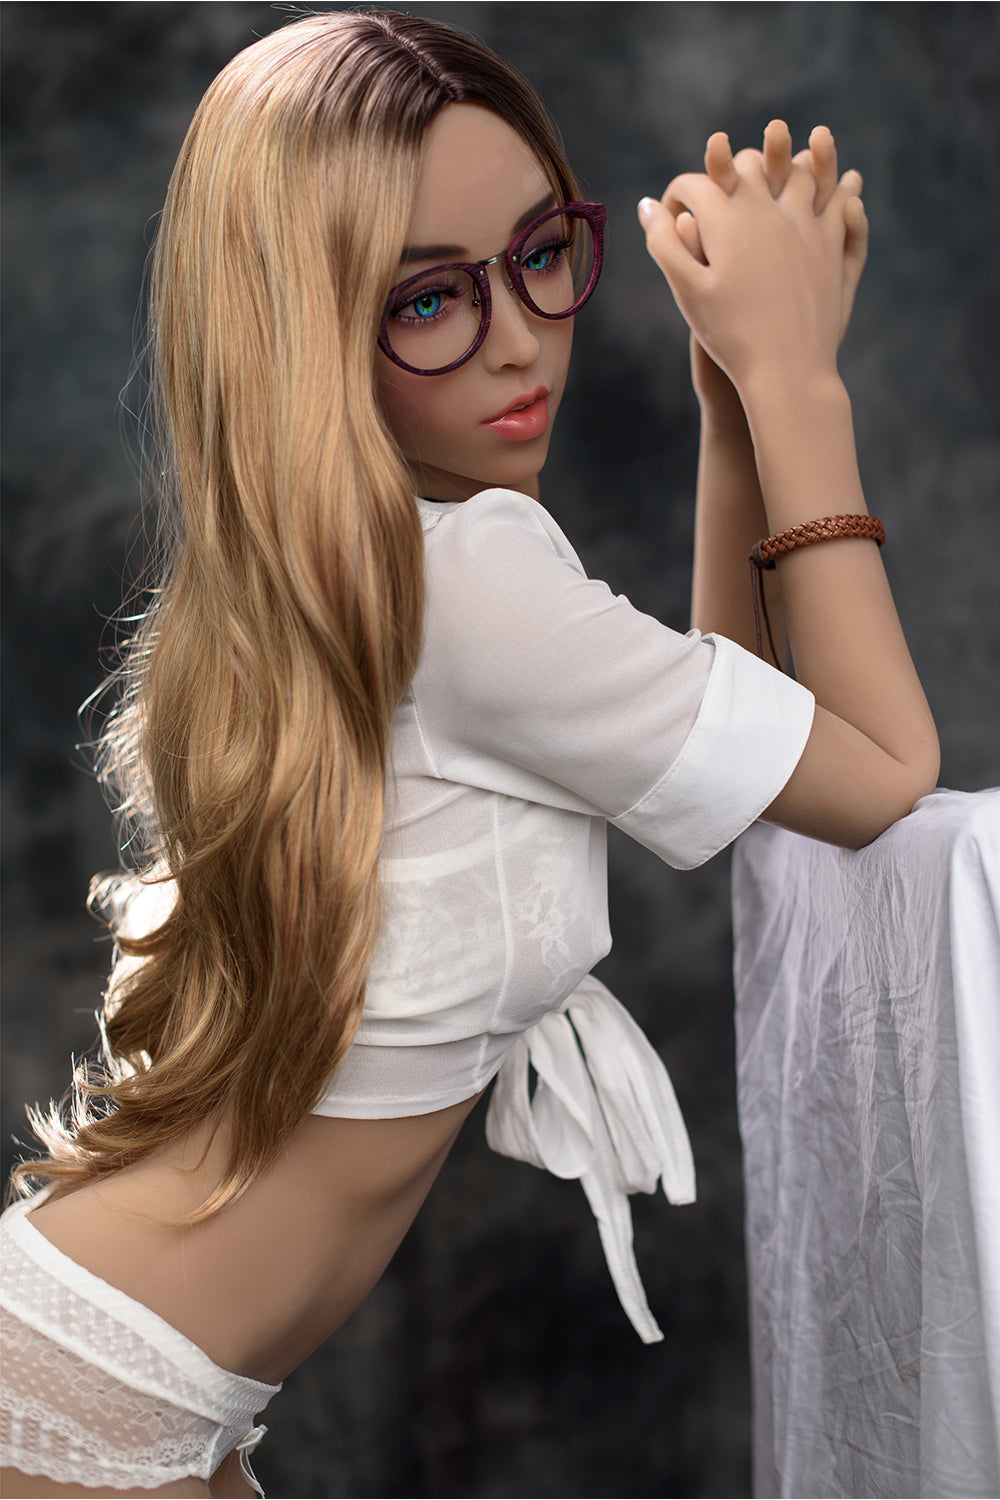 EU Stock - 166cm Keara #237 Small Breasts TPE Sex Doll Realistic Adult Love Doll